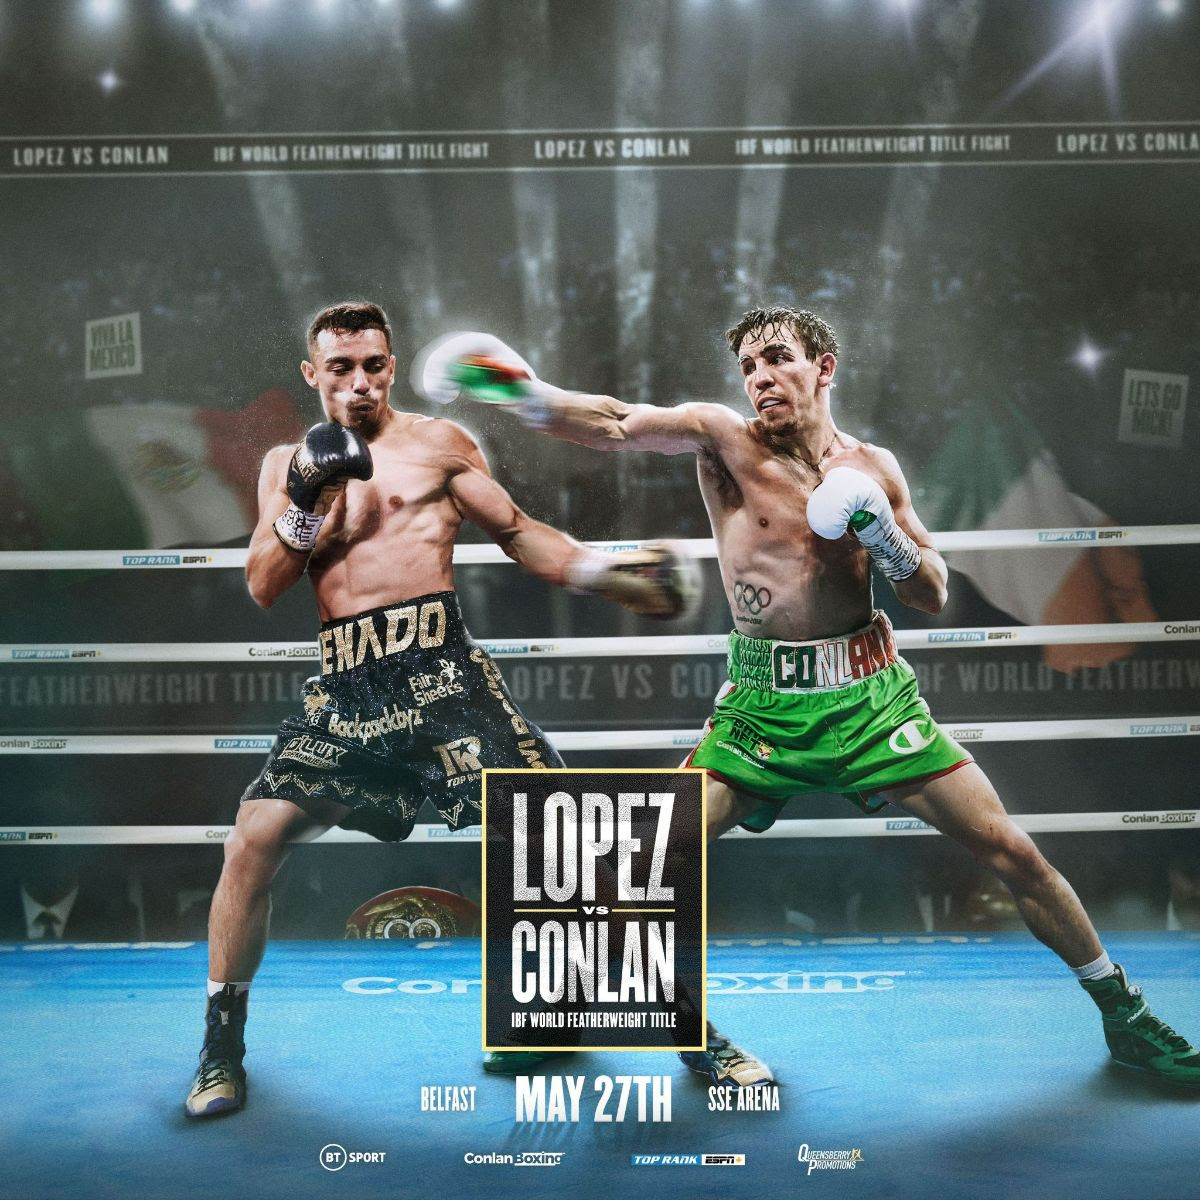 Michael Conlan retará a Luis Alberto Lopez por el título mundial de la IBF en Belfast, el 27 de mayo